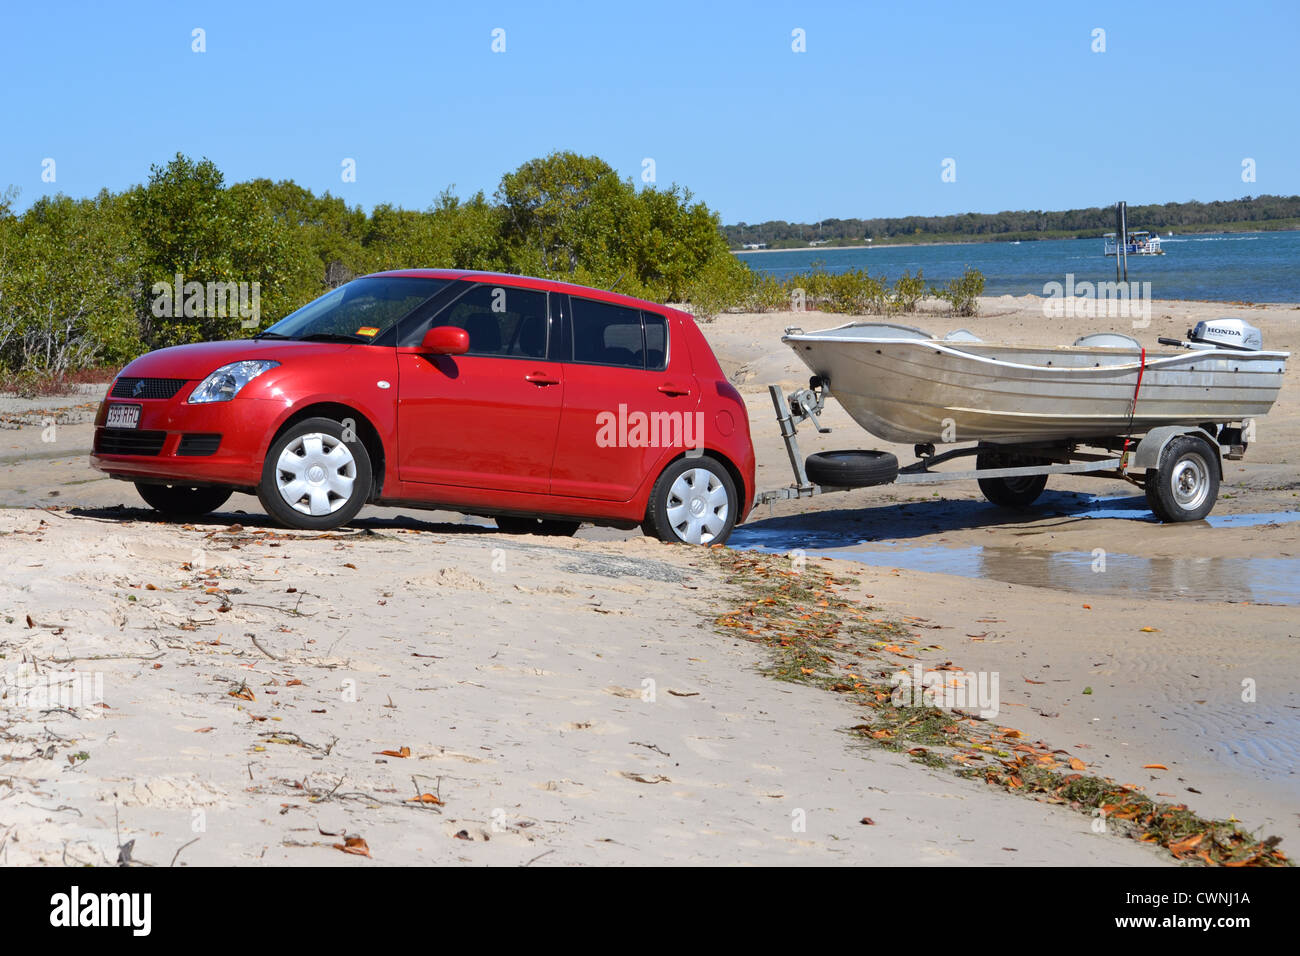 La Suzuki Swift rouge remorque bateau dans l'eau en face de la plage Banque D'Images